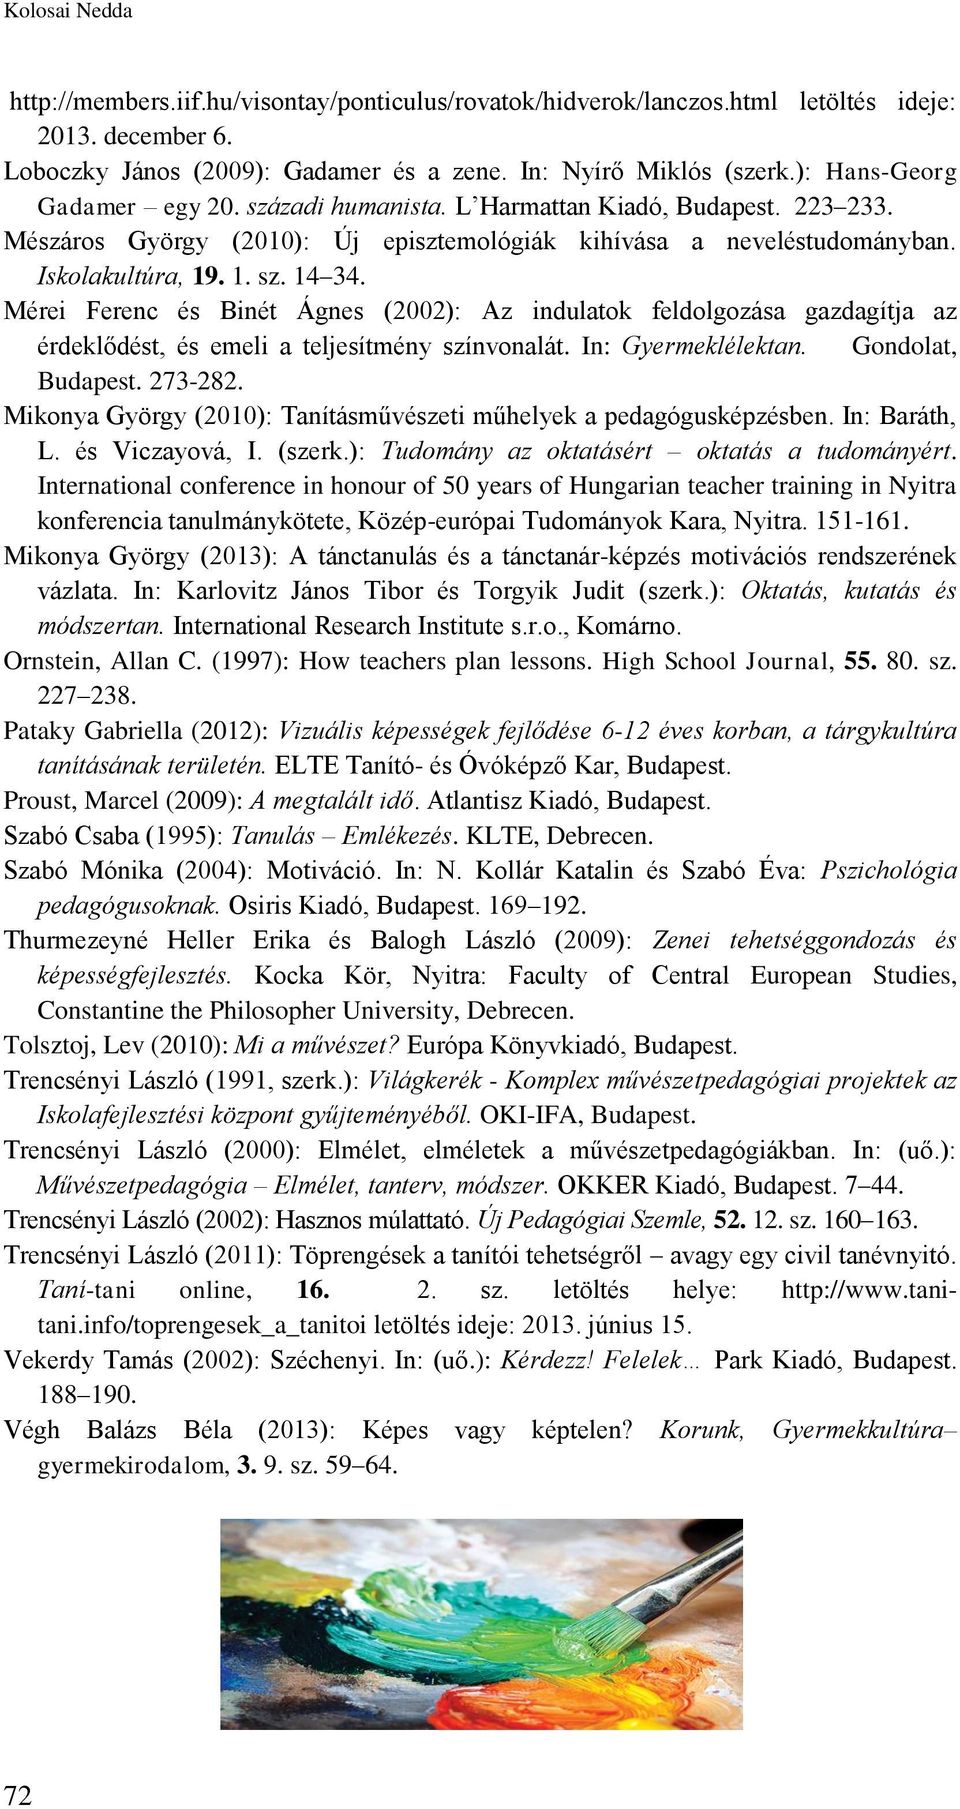 Mérei Ferenc és Binét Ágnes (2002): Az indulatok feldolgozása gazdagítja az érdeklődést, és emeli a teljesítmény színvonalát. In: Gyermeklélektan. Gondolat, Budapest. 273-282.